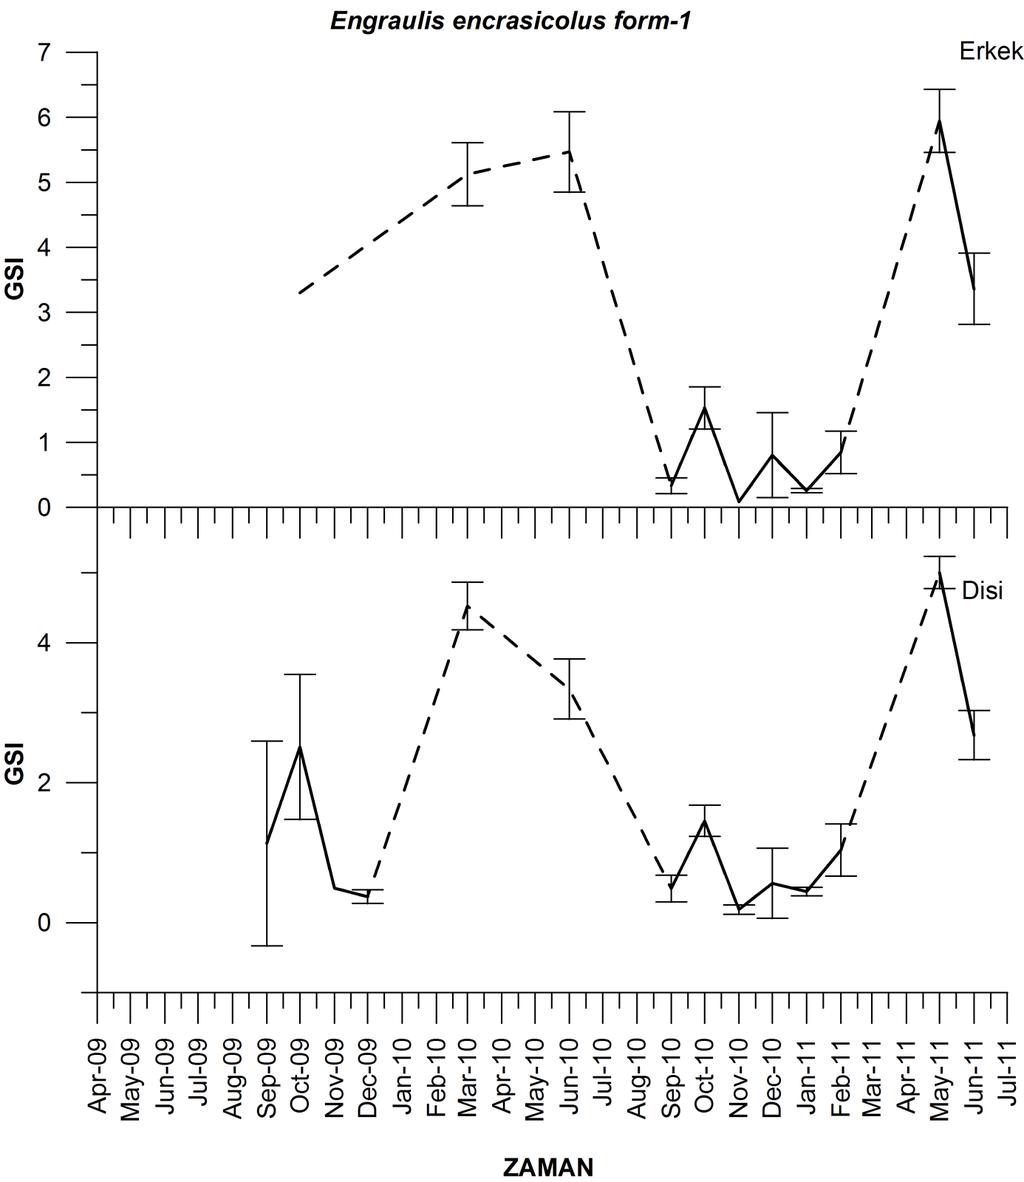 Şekil 86: Engraulis encrasicolus form-1 türünün dişi ve erkek bireylerine ait aylık GSI değişimleri GSI değişimleri her iki eşey için genel olarak benzerlik göstermektedir fakat 2010 ve 2011